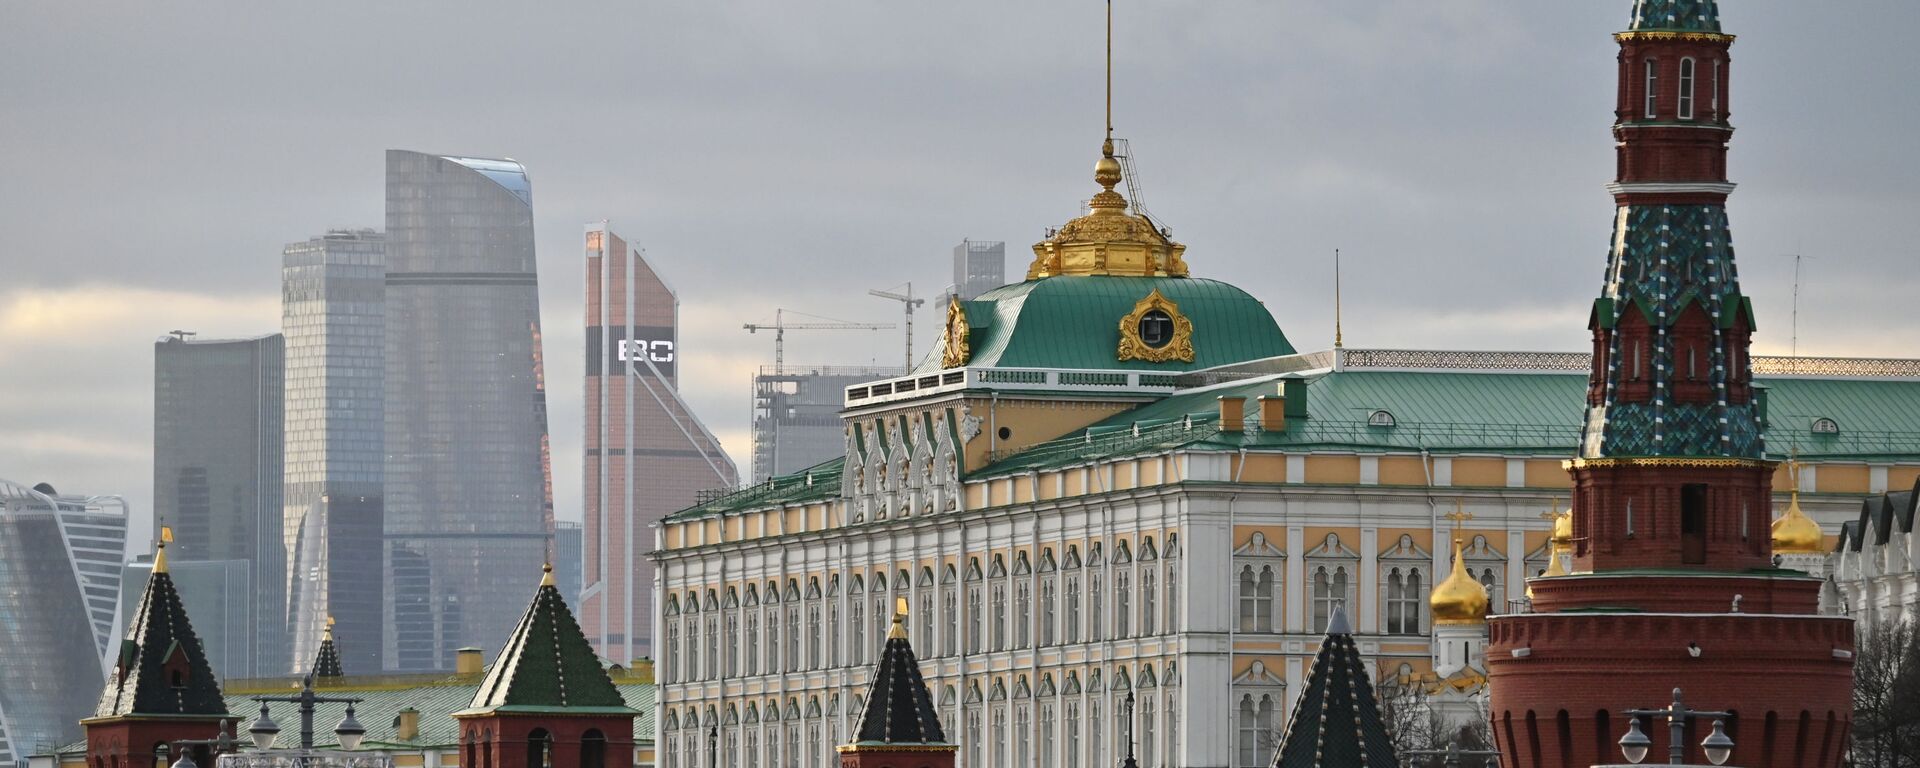 Московский Кремль и небоскребы делового центра Москва-сити, архивное фото - Sputnik Латвия, 1920, 31.12.2021